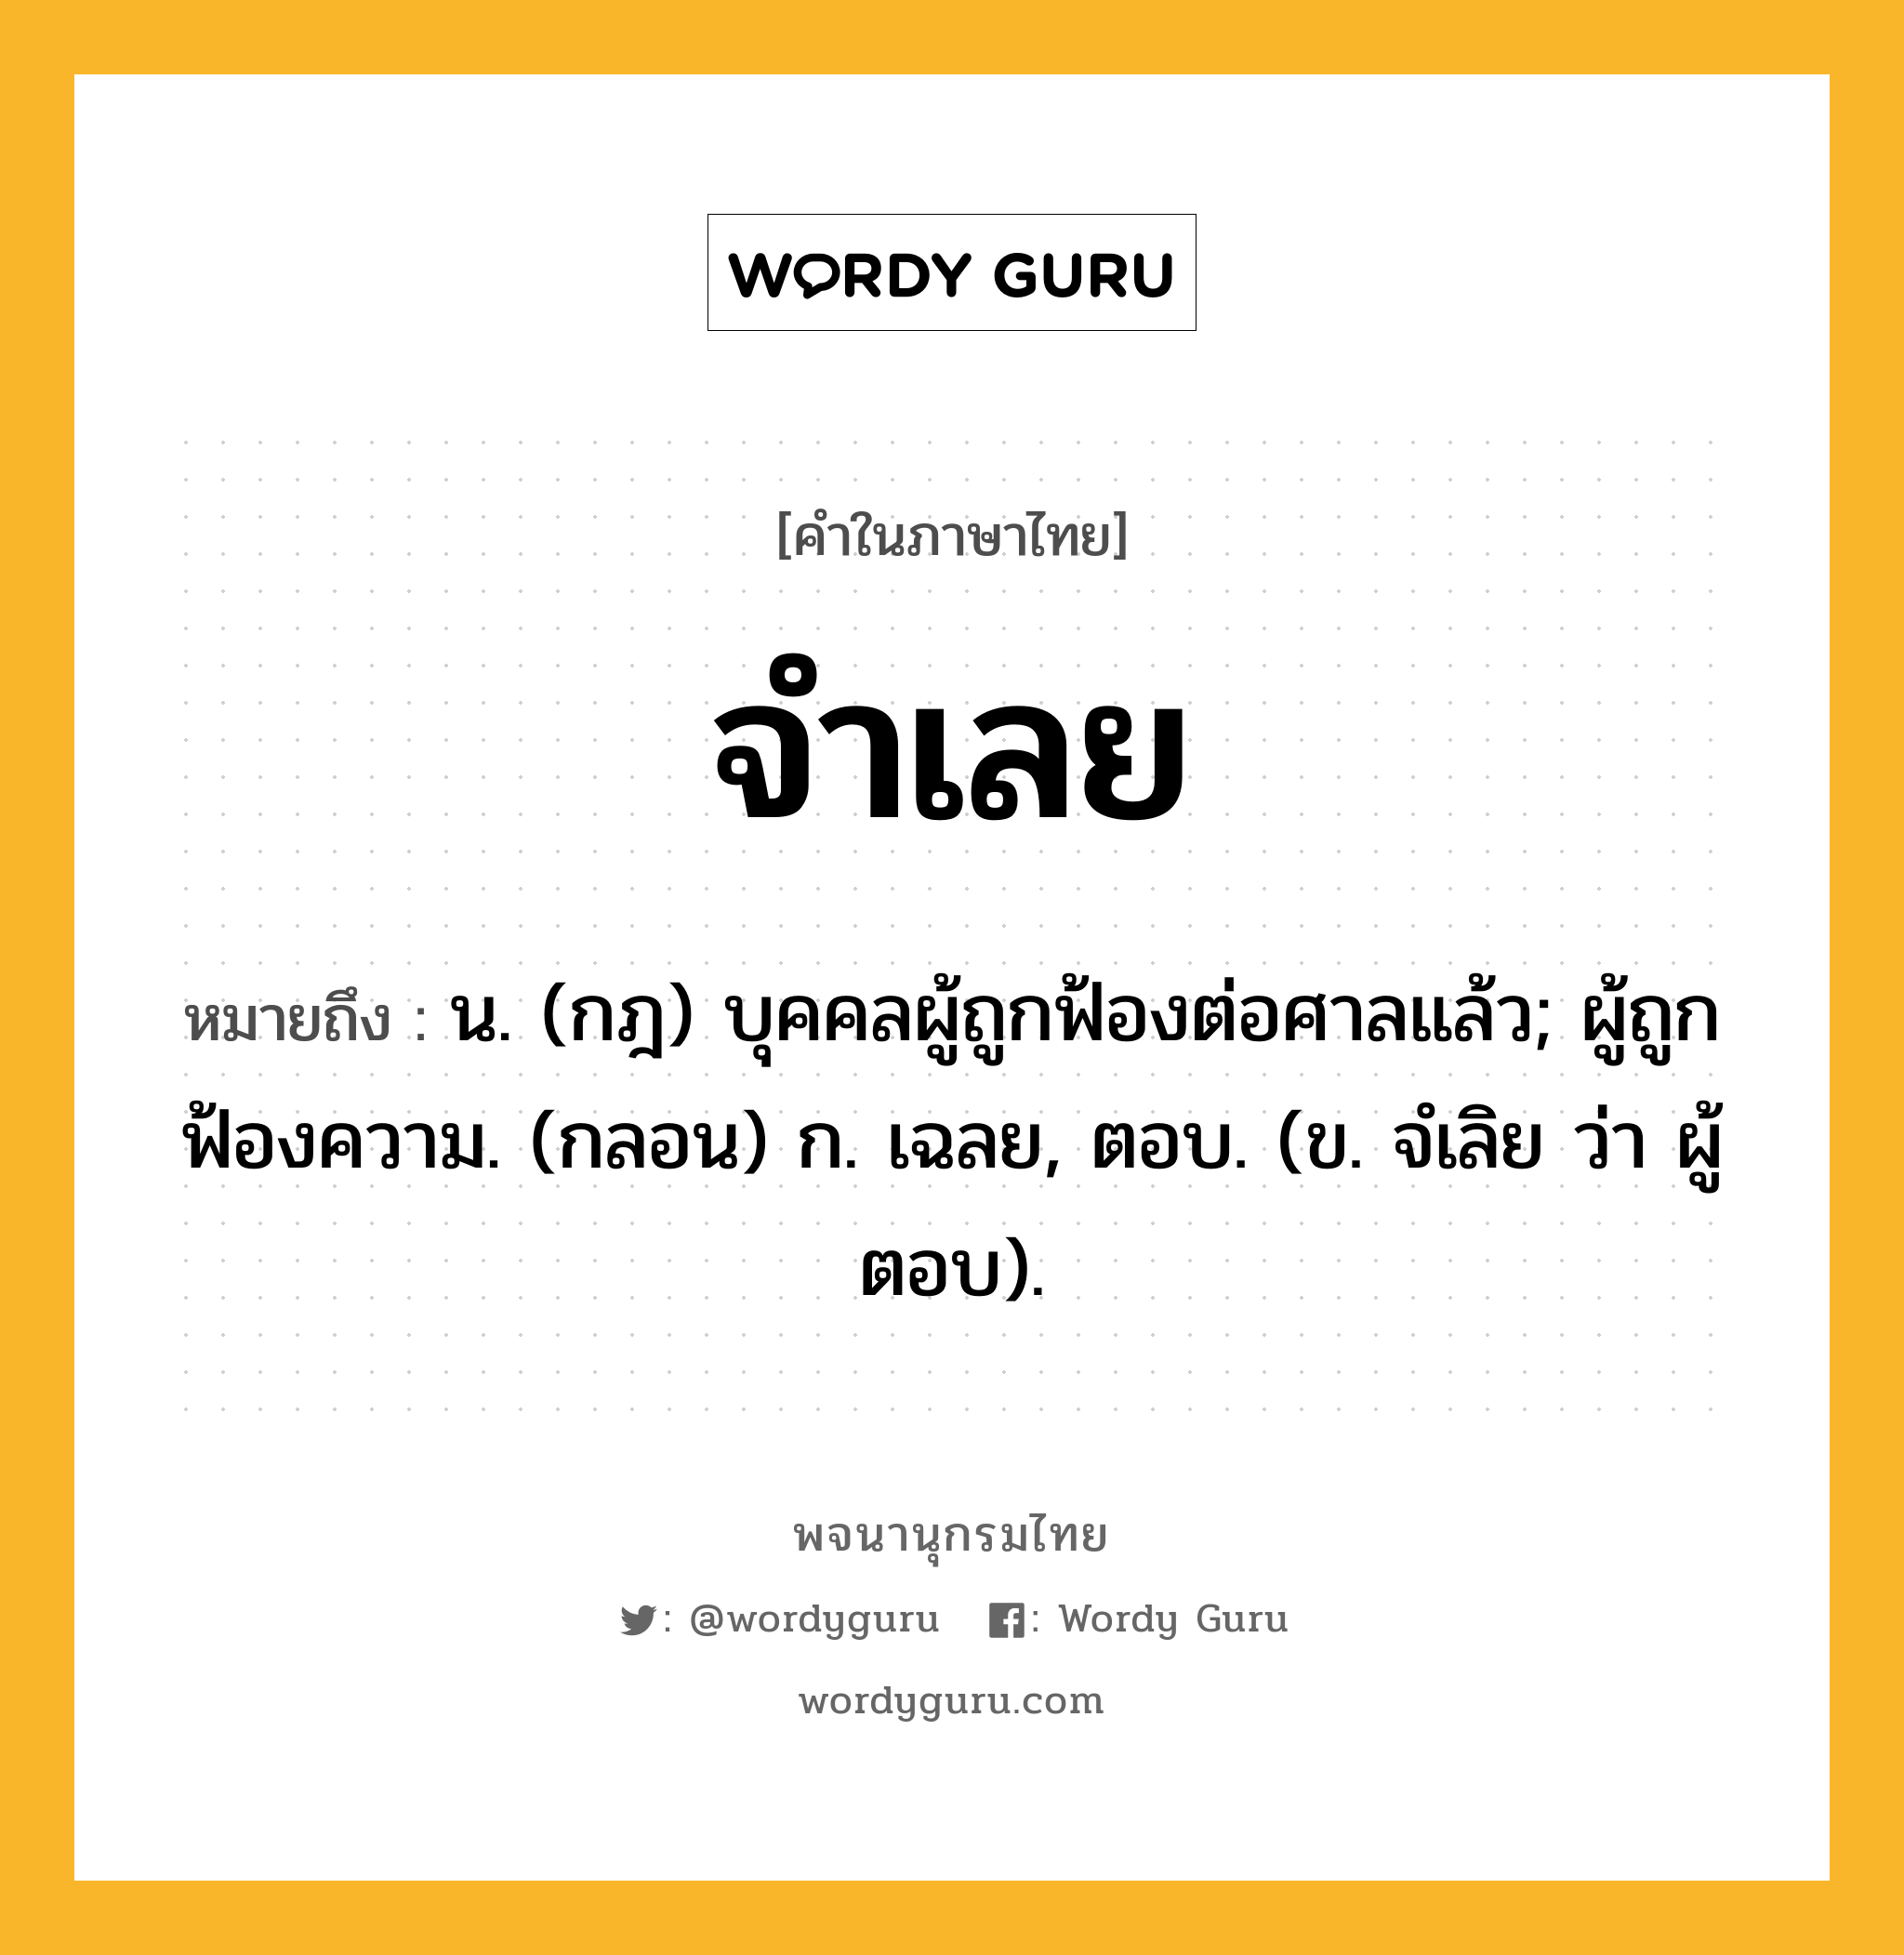 จำเลย ความหมาย หมายถึงอะไร?, คำในภาษาไทย จำเลย หมายถึง น. (กฎ) บุคคลผู้ถูกฟ้องต่อศาลแล้ว; ผู้ถูกฟ้องความ. (กลอน) ก. เฉลย, ตอบ. (ข. จํเลิย ว่า ผู้ตอบ).